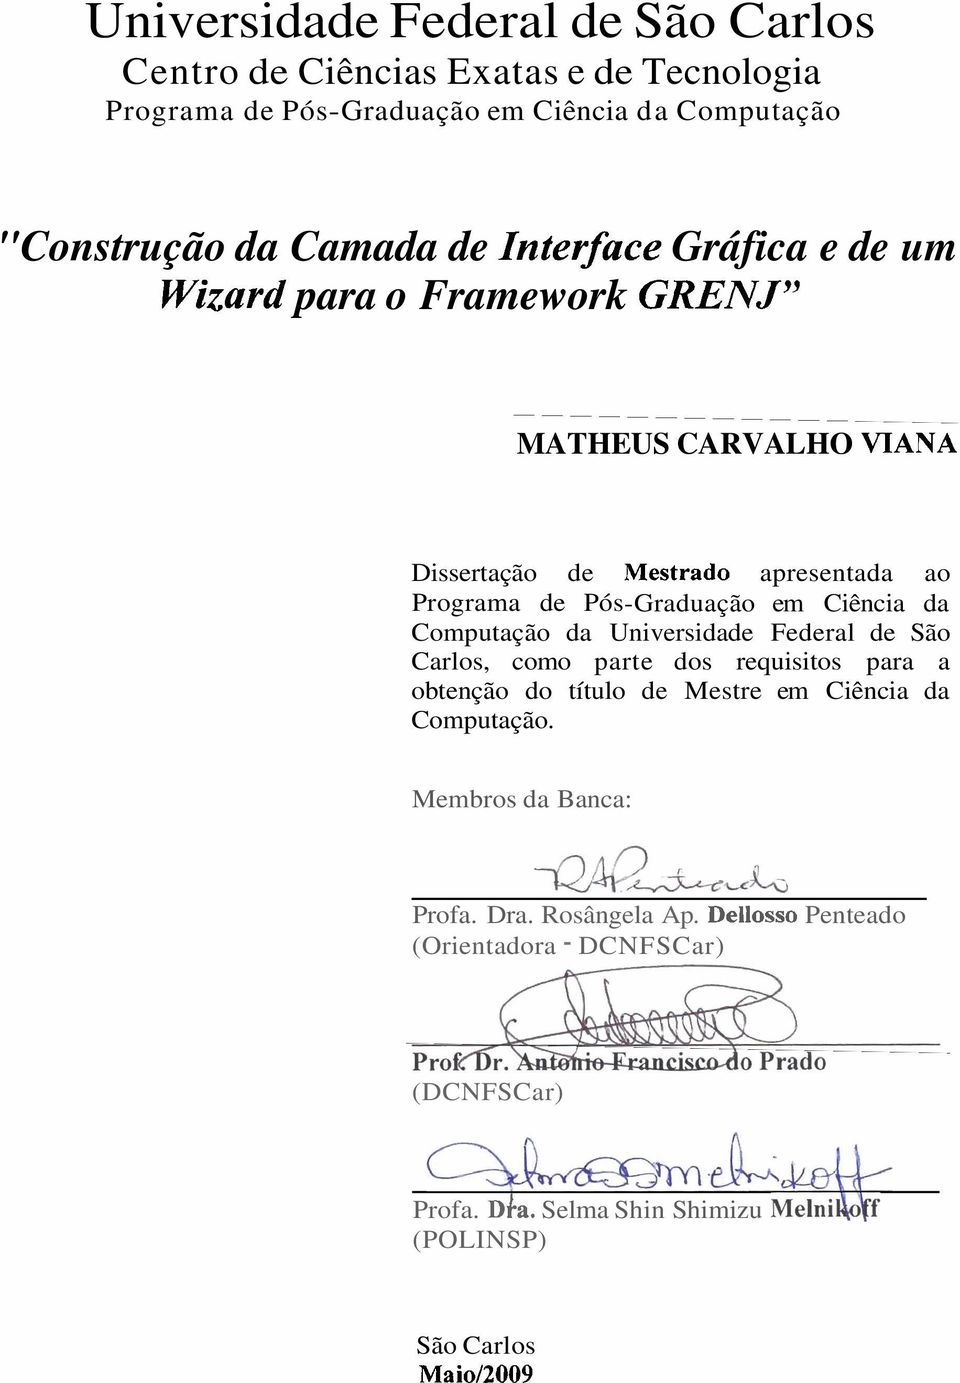 Ciência da Computação da Universidade Federal de São Carlos, como parte dos requisitos para a obtenção do título de Mestre em Ciência da Computação.